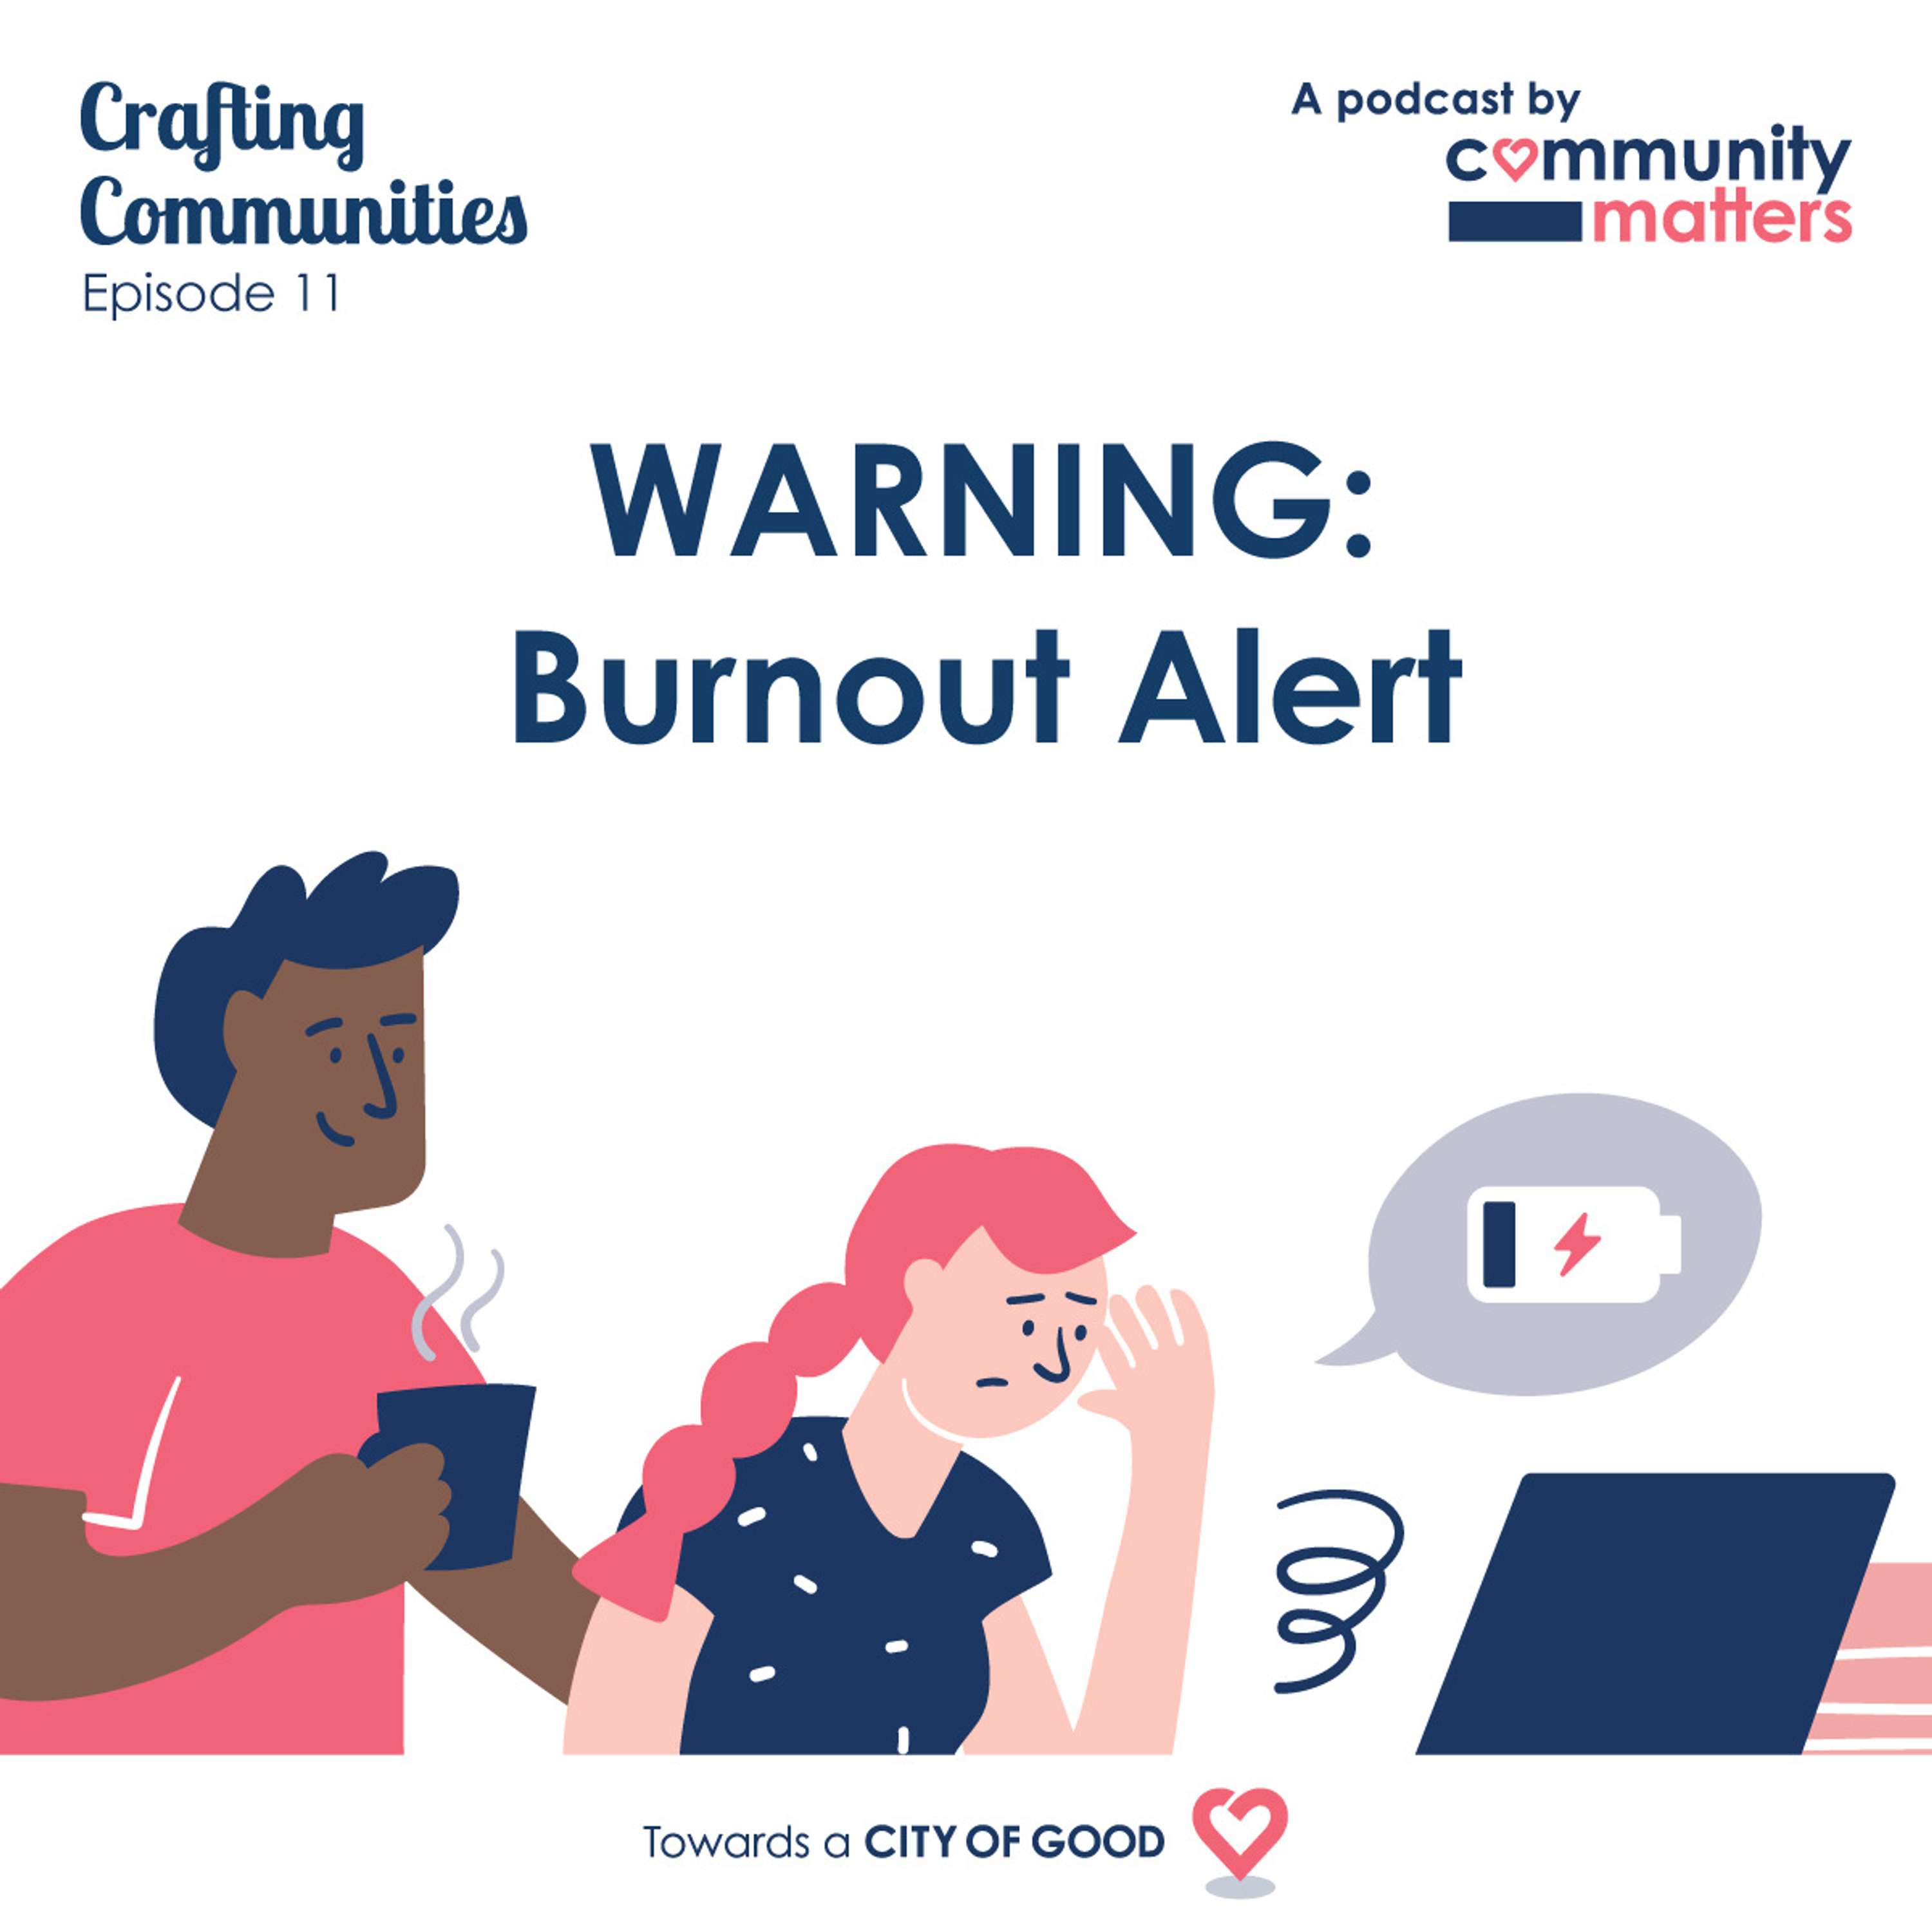 WARNING: Burnout Alert